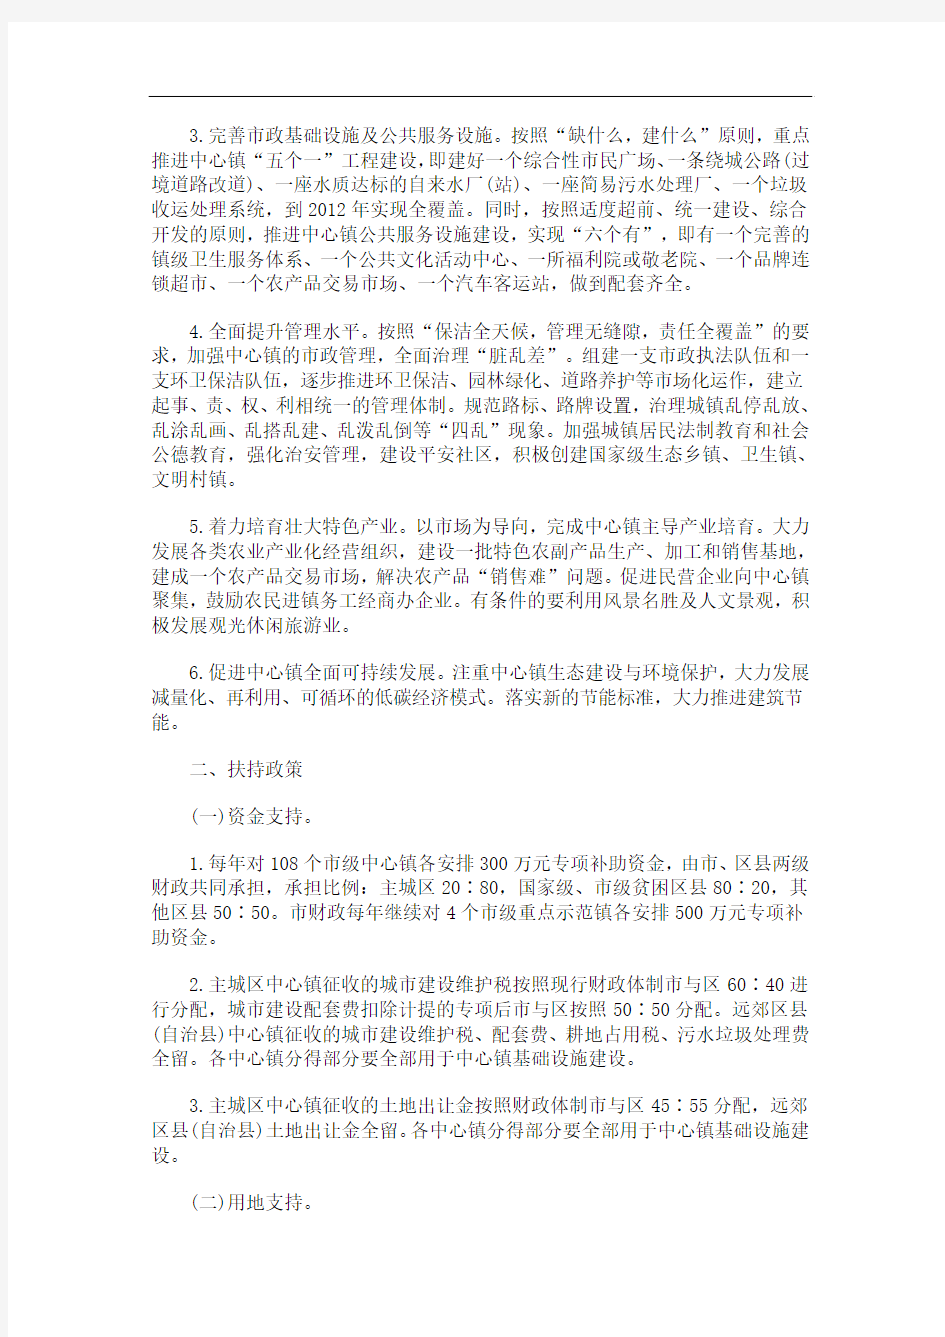 的意见重庆市人民政府关于加快中心镇建设